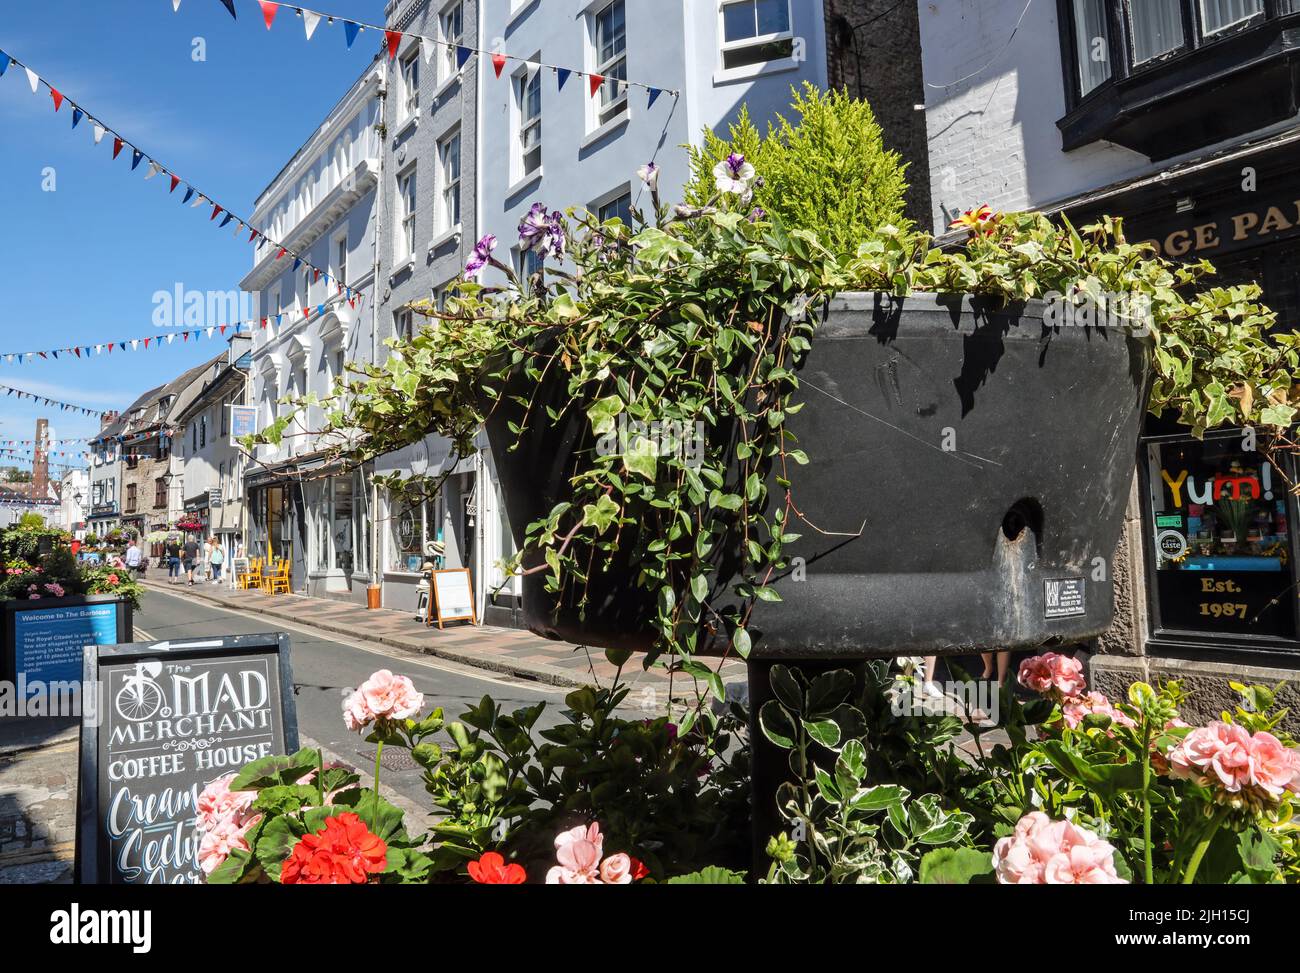 Blumentübel und Verblumungen bringen ein festliches Feeling in die Southside Street auf Plymouth historischem Barbican. Eine schrullige Mischung aus kleinen Geschäften, öffentlichen Häusern und r Stockfoto